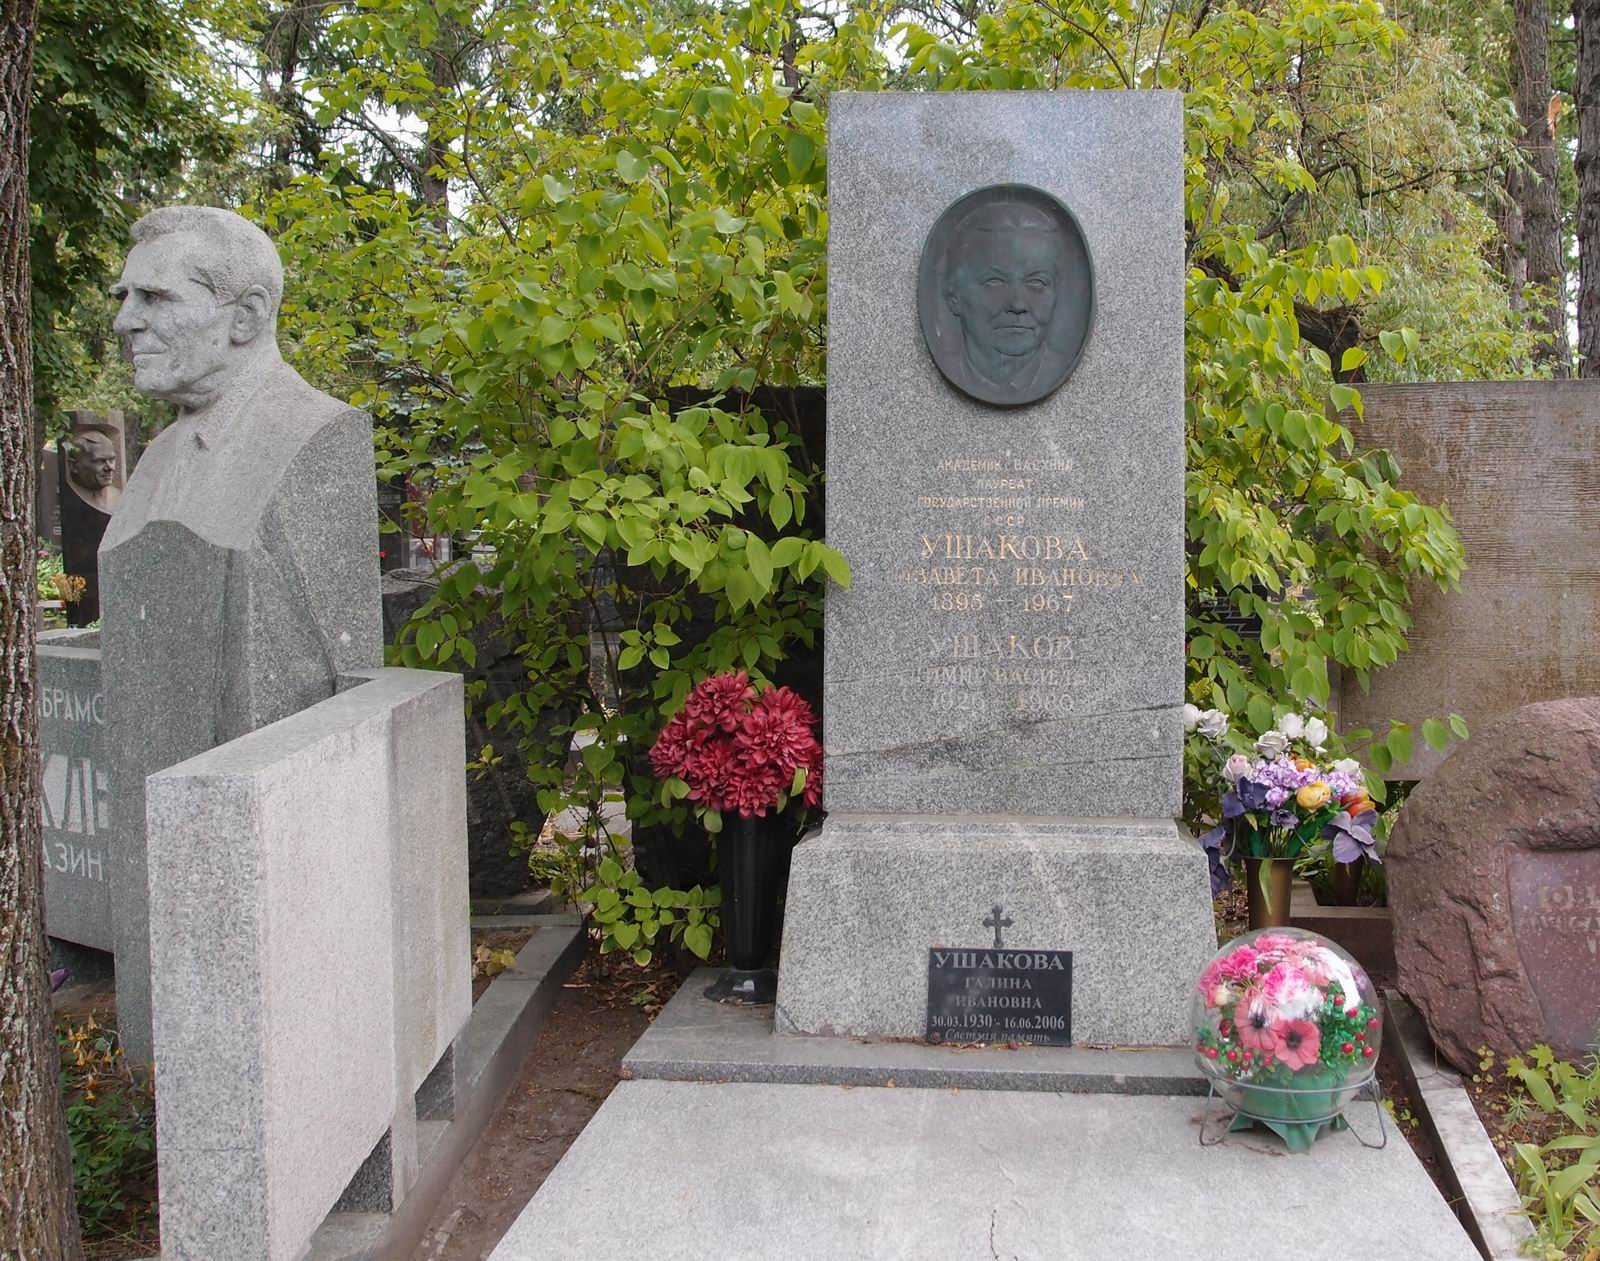 Памятник на могиле Ушаковой Е.И. (1895-1967), на Новодевичьем кладбище (8-44-2). Нажмите левую кнопку мыши чтобы увидеть фрагмент памятника.